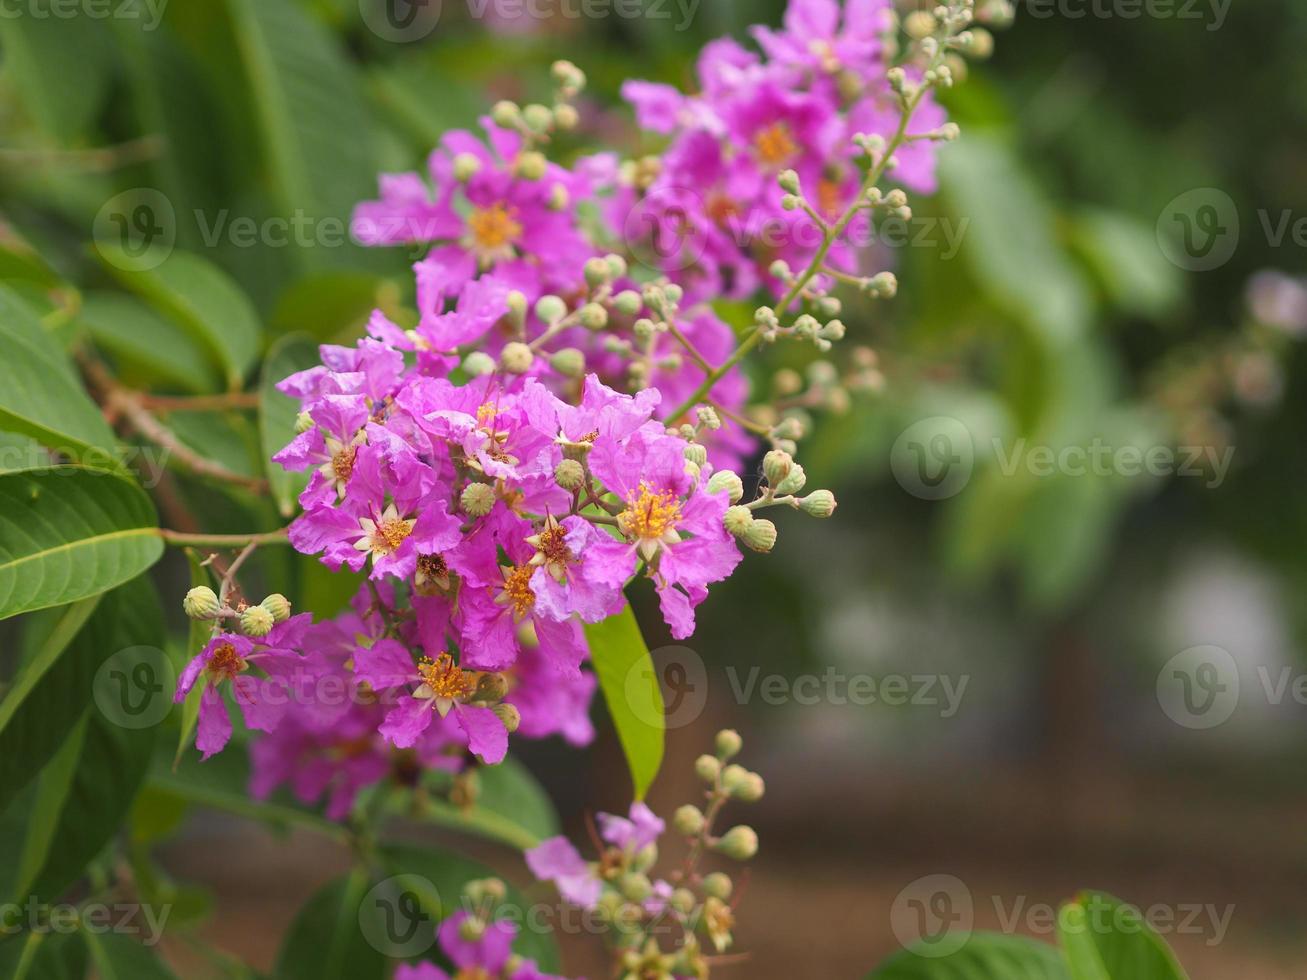 bungor, lagerstroemia floribunda jack ex blume violetter blumenbaum im gartennaturhintergrund foto